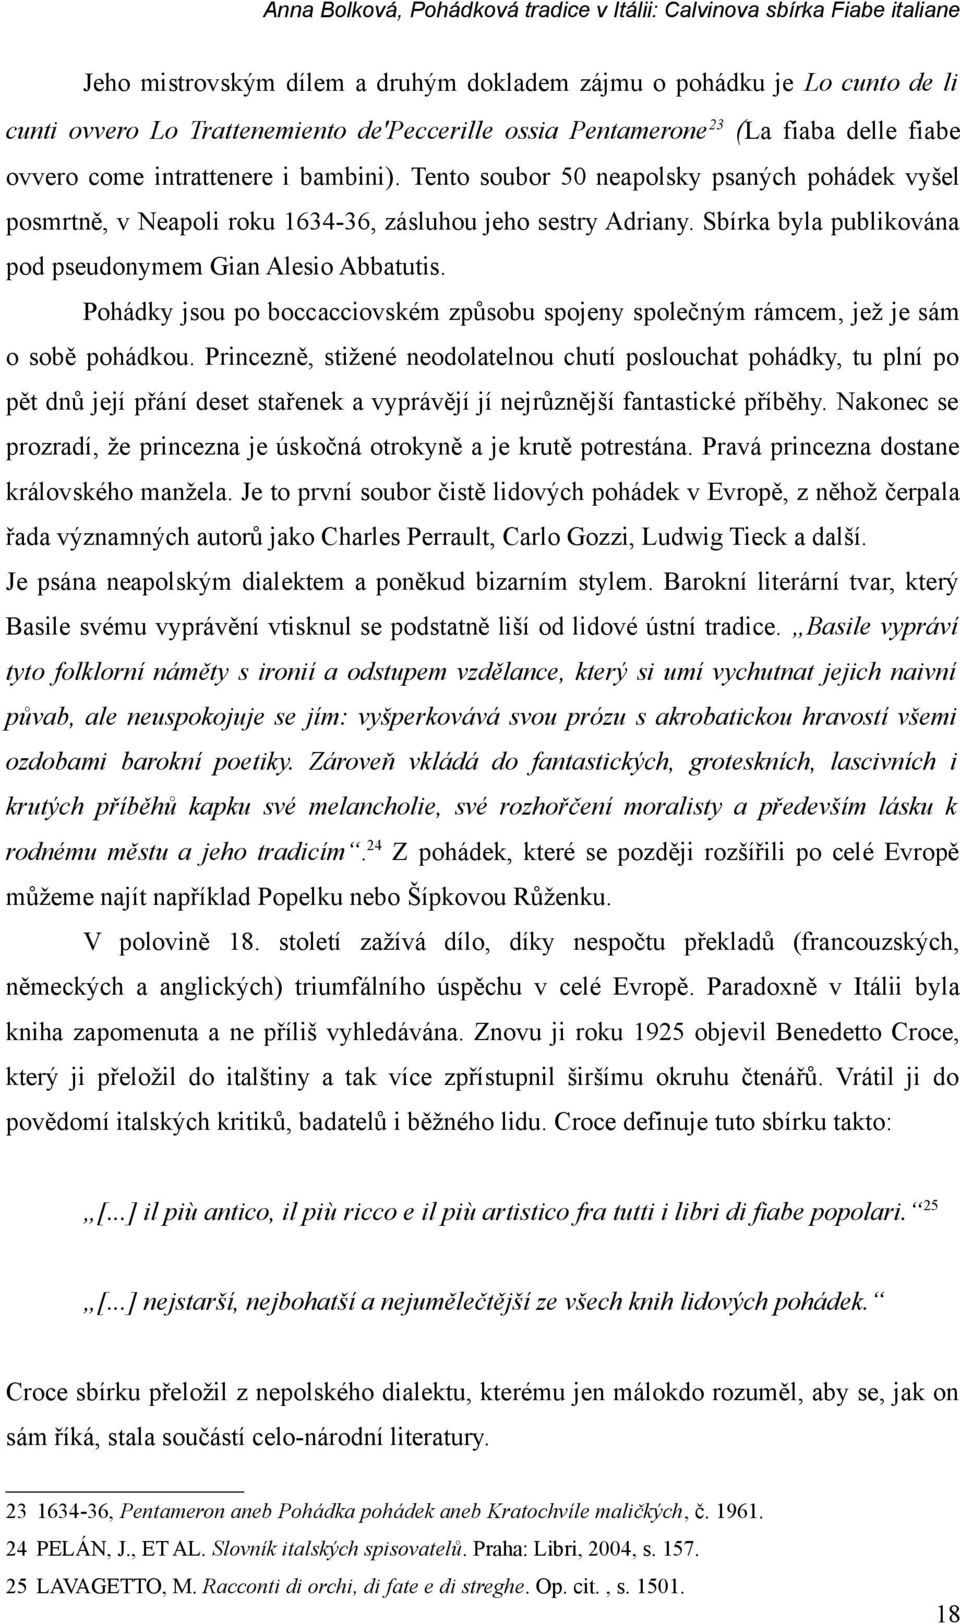 Pohádková tradice v Itálii: Calvinova sbírka Fiabe italiane - PDF Stažení  zdarma